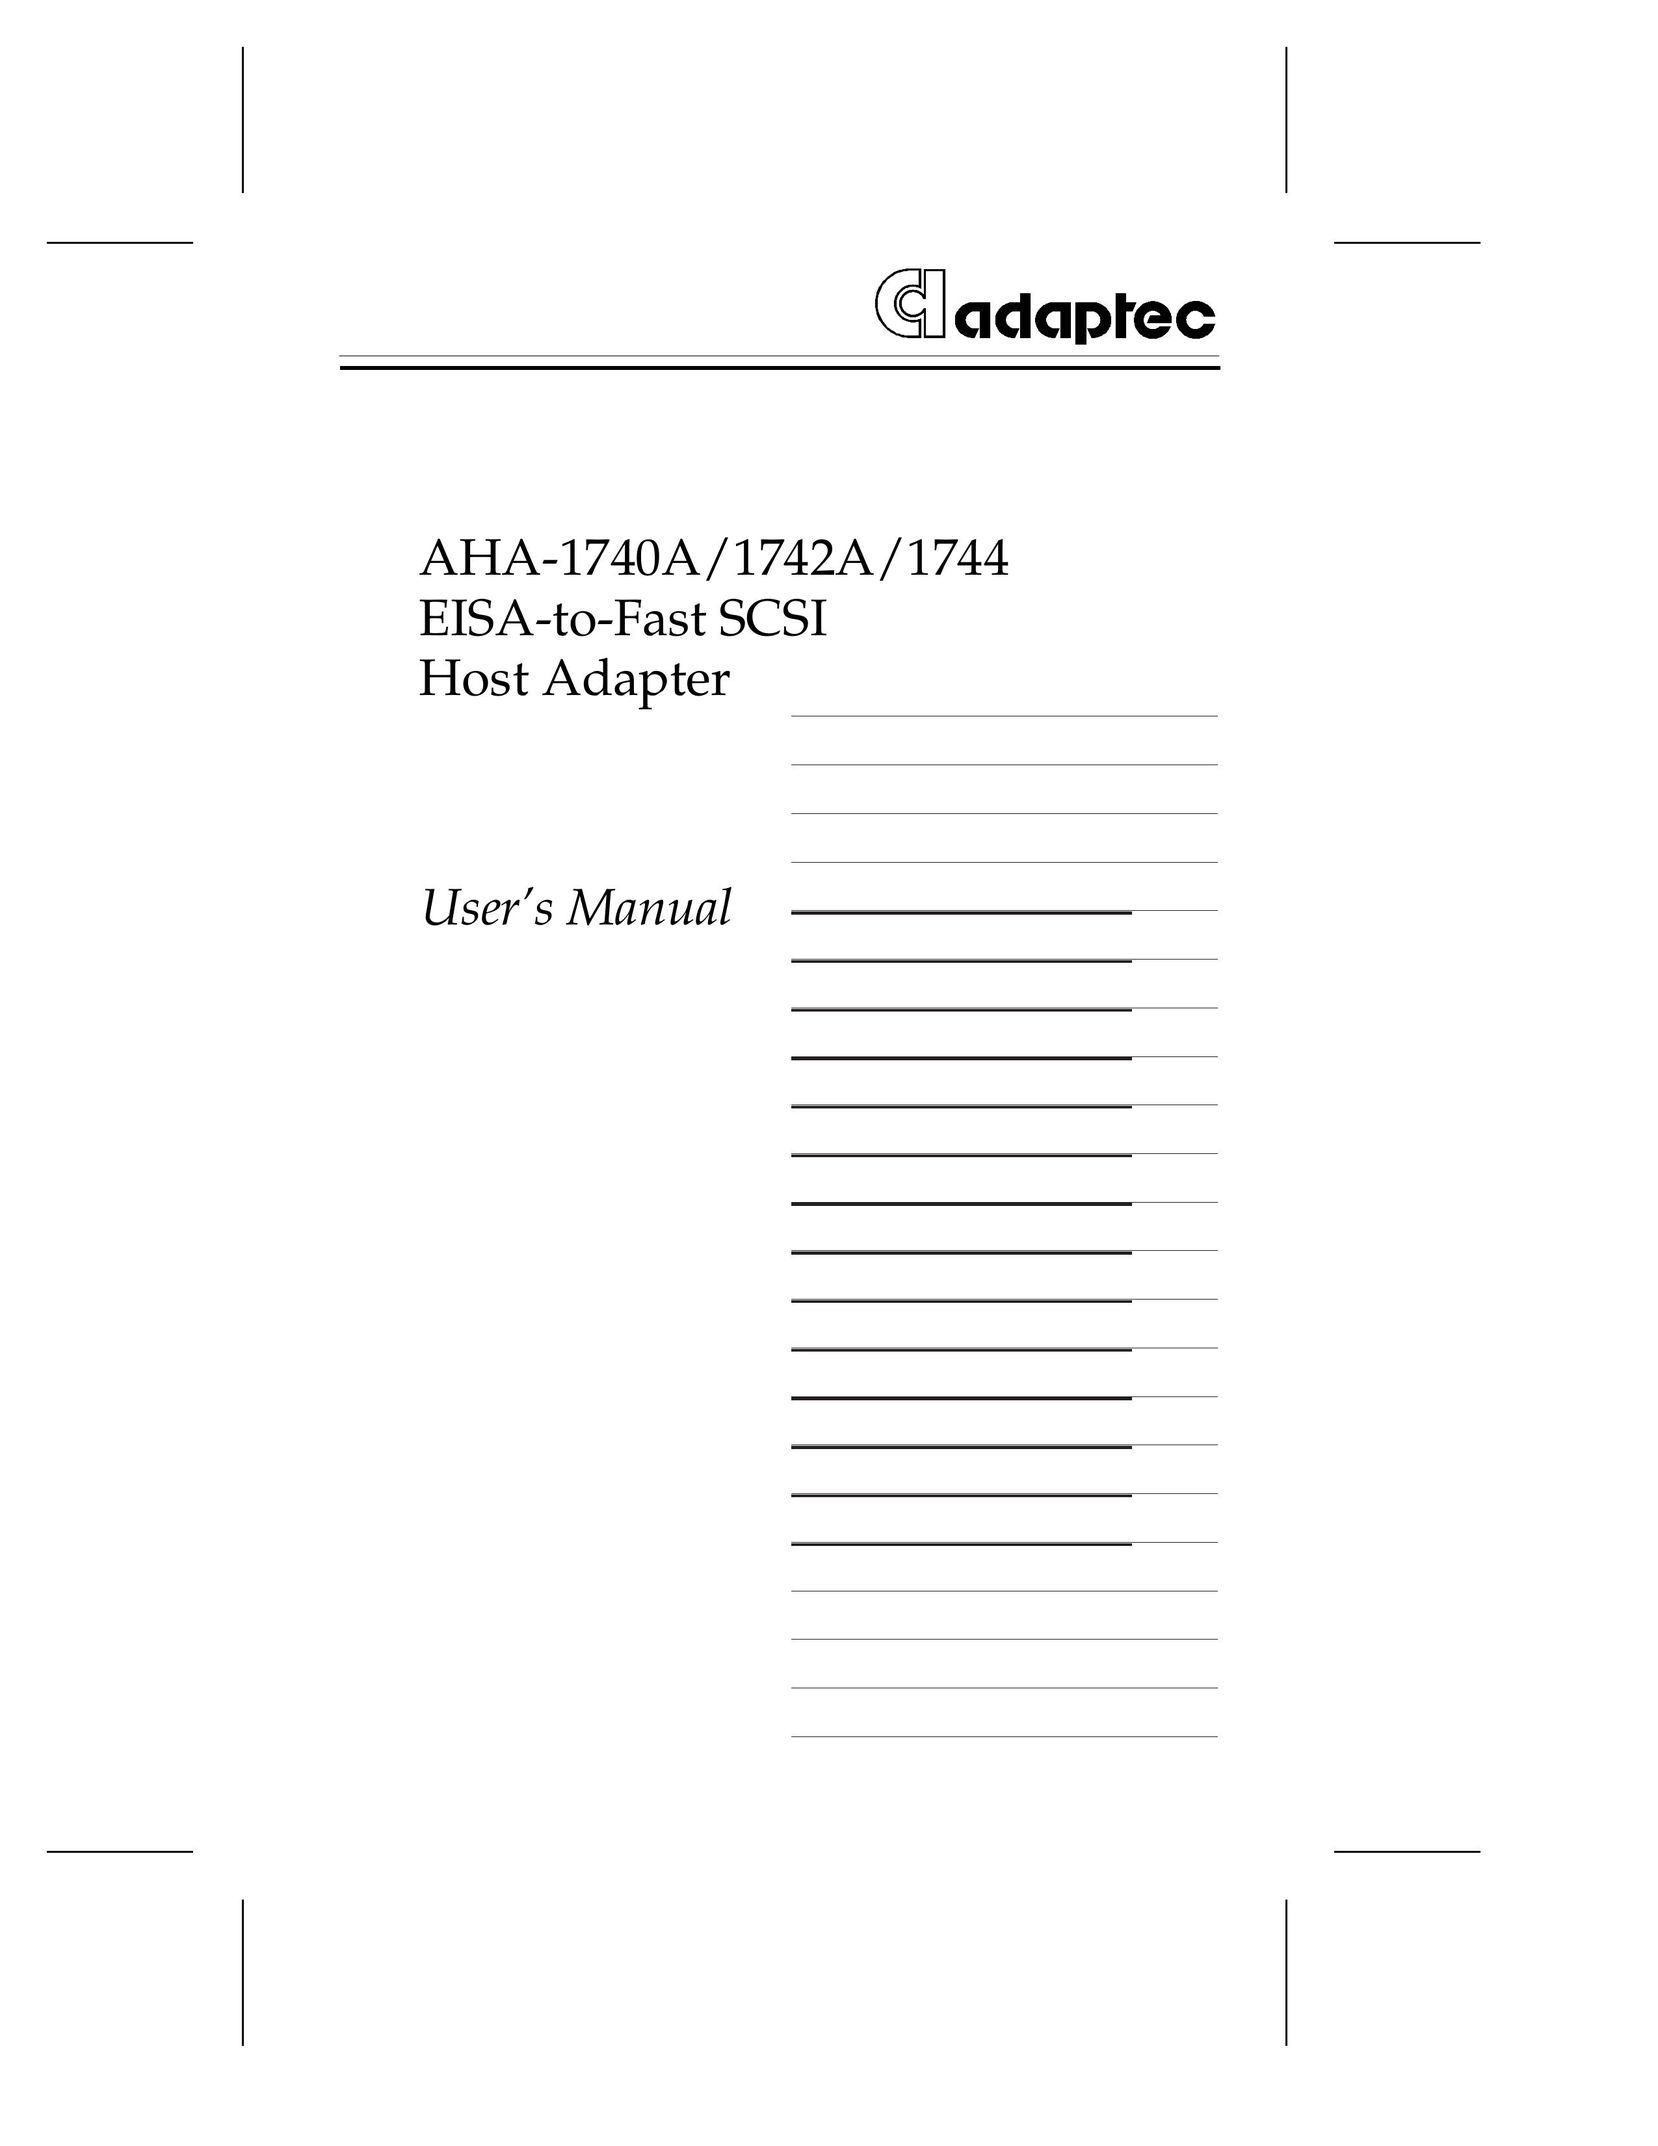 Adaptec AHA-1740A Network Card User Manual